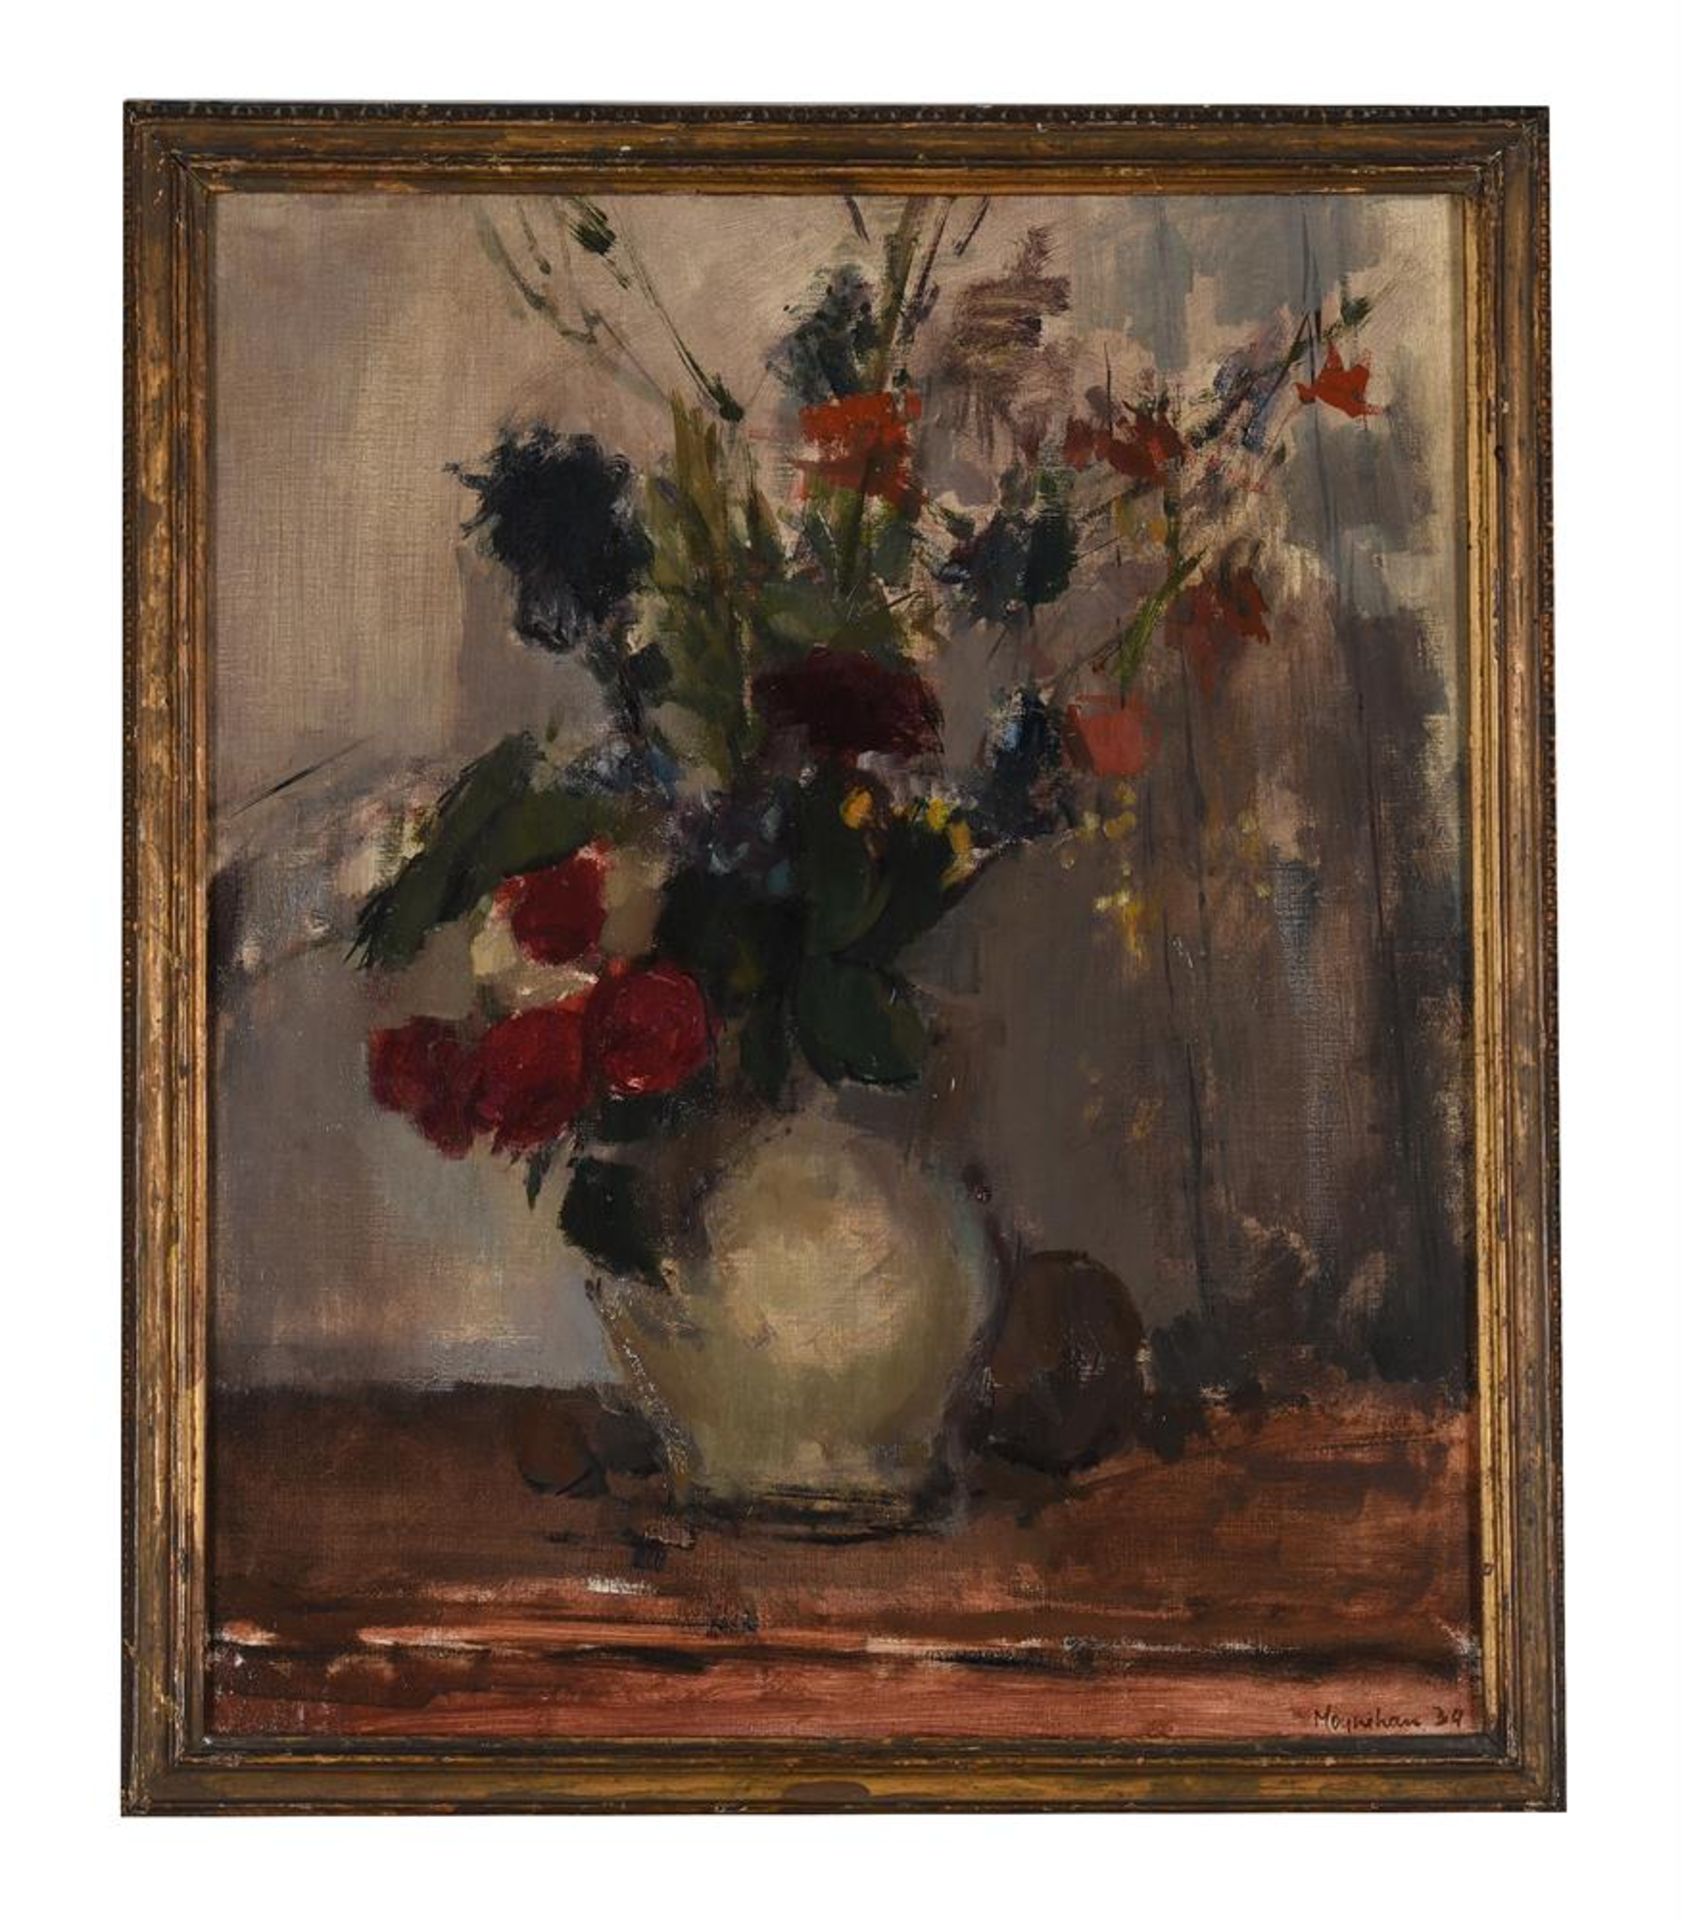 λ RODRIGO MOYNIHAN (BRITISH 1910-1991), STILL LIFE OF FLOWERS IN A VASE - Image 2 of 3